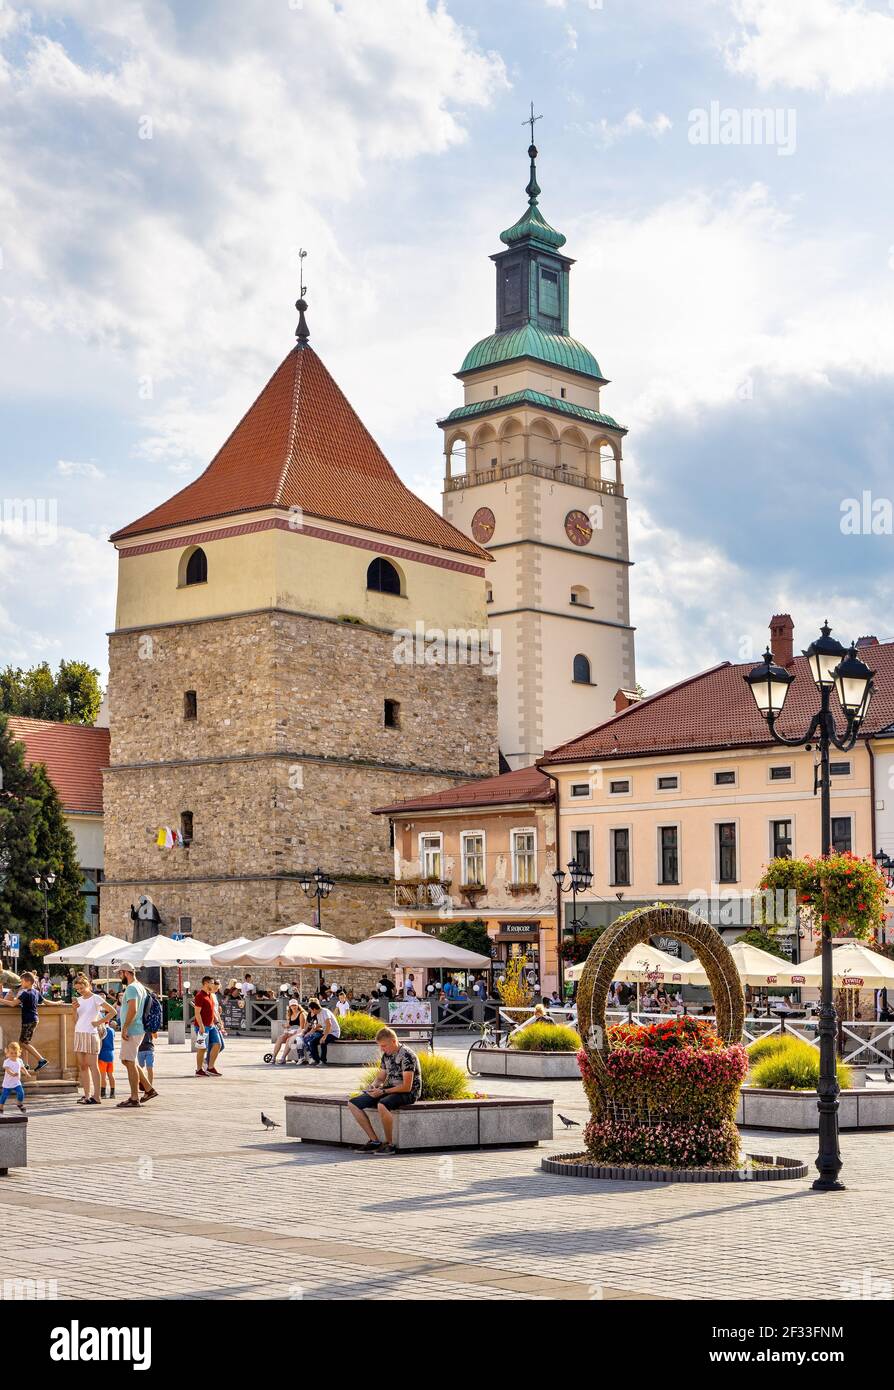 Zywiec, Polonia - 30 agosto 2020: Vista panoramica sulla piazza del mercato con storico campanile in pietra e Cattedrale della Natività della Beata Vergine Maria Foto Stock